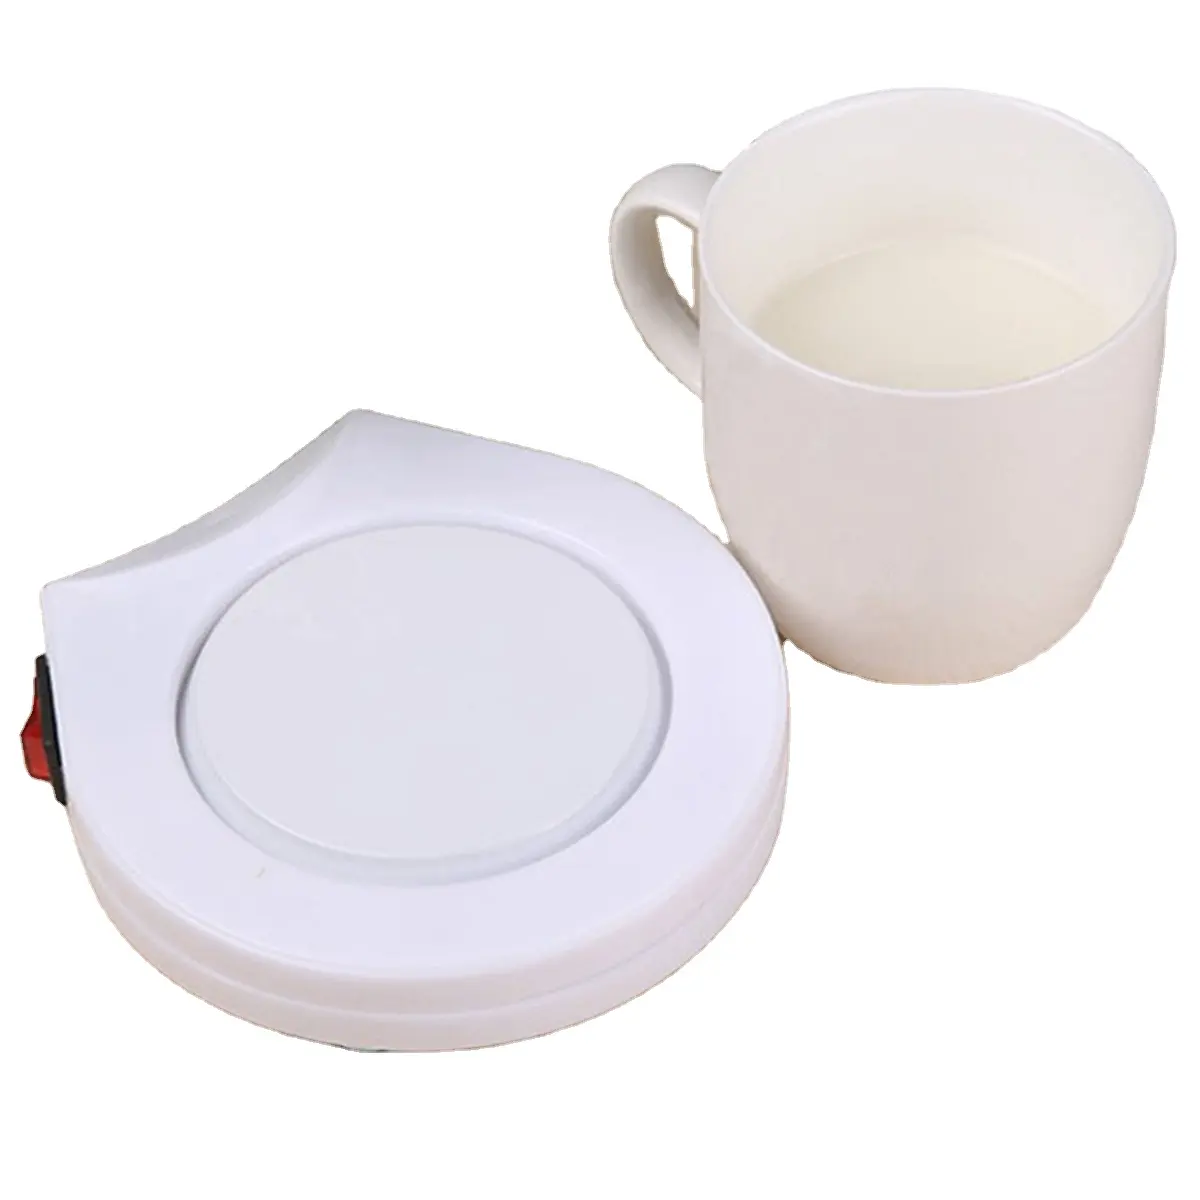 NewestデザインスマートデスクトップUSBクーラーパッド飲料ドリンクコーヒー茶マグカップ缶クーラーウォーマー